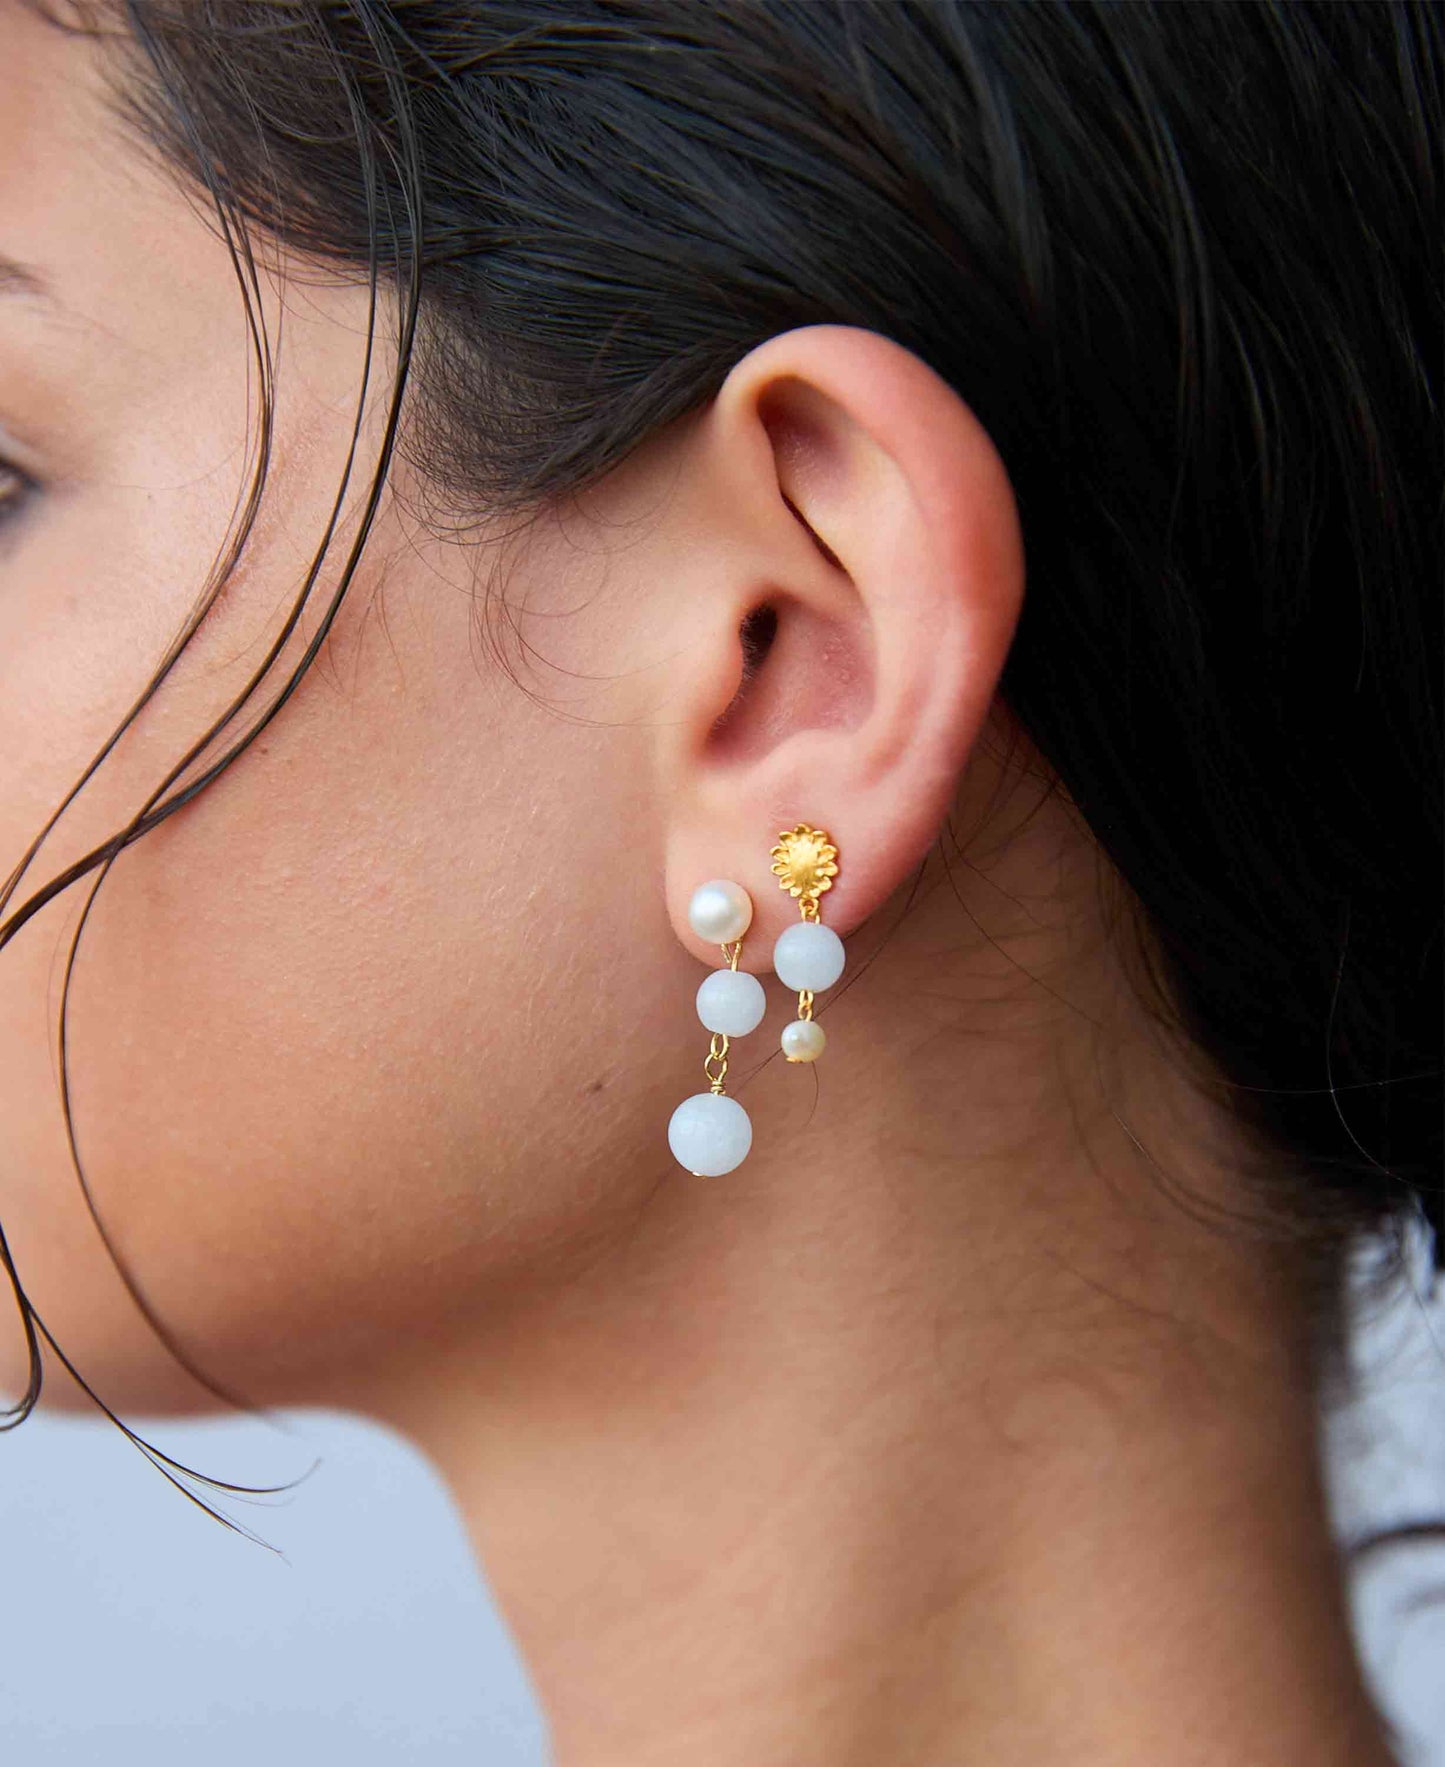 Fabienne earrings